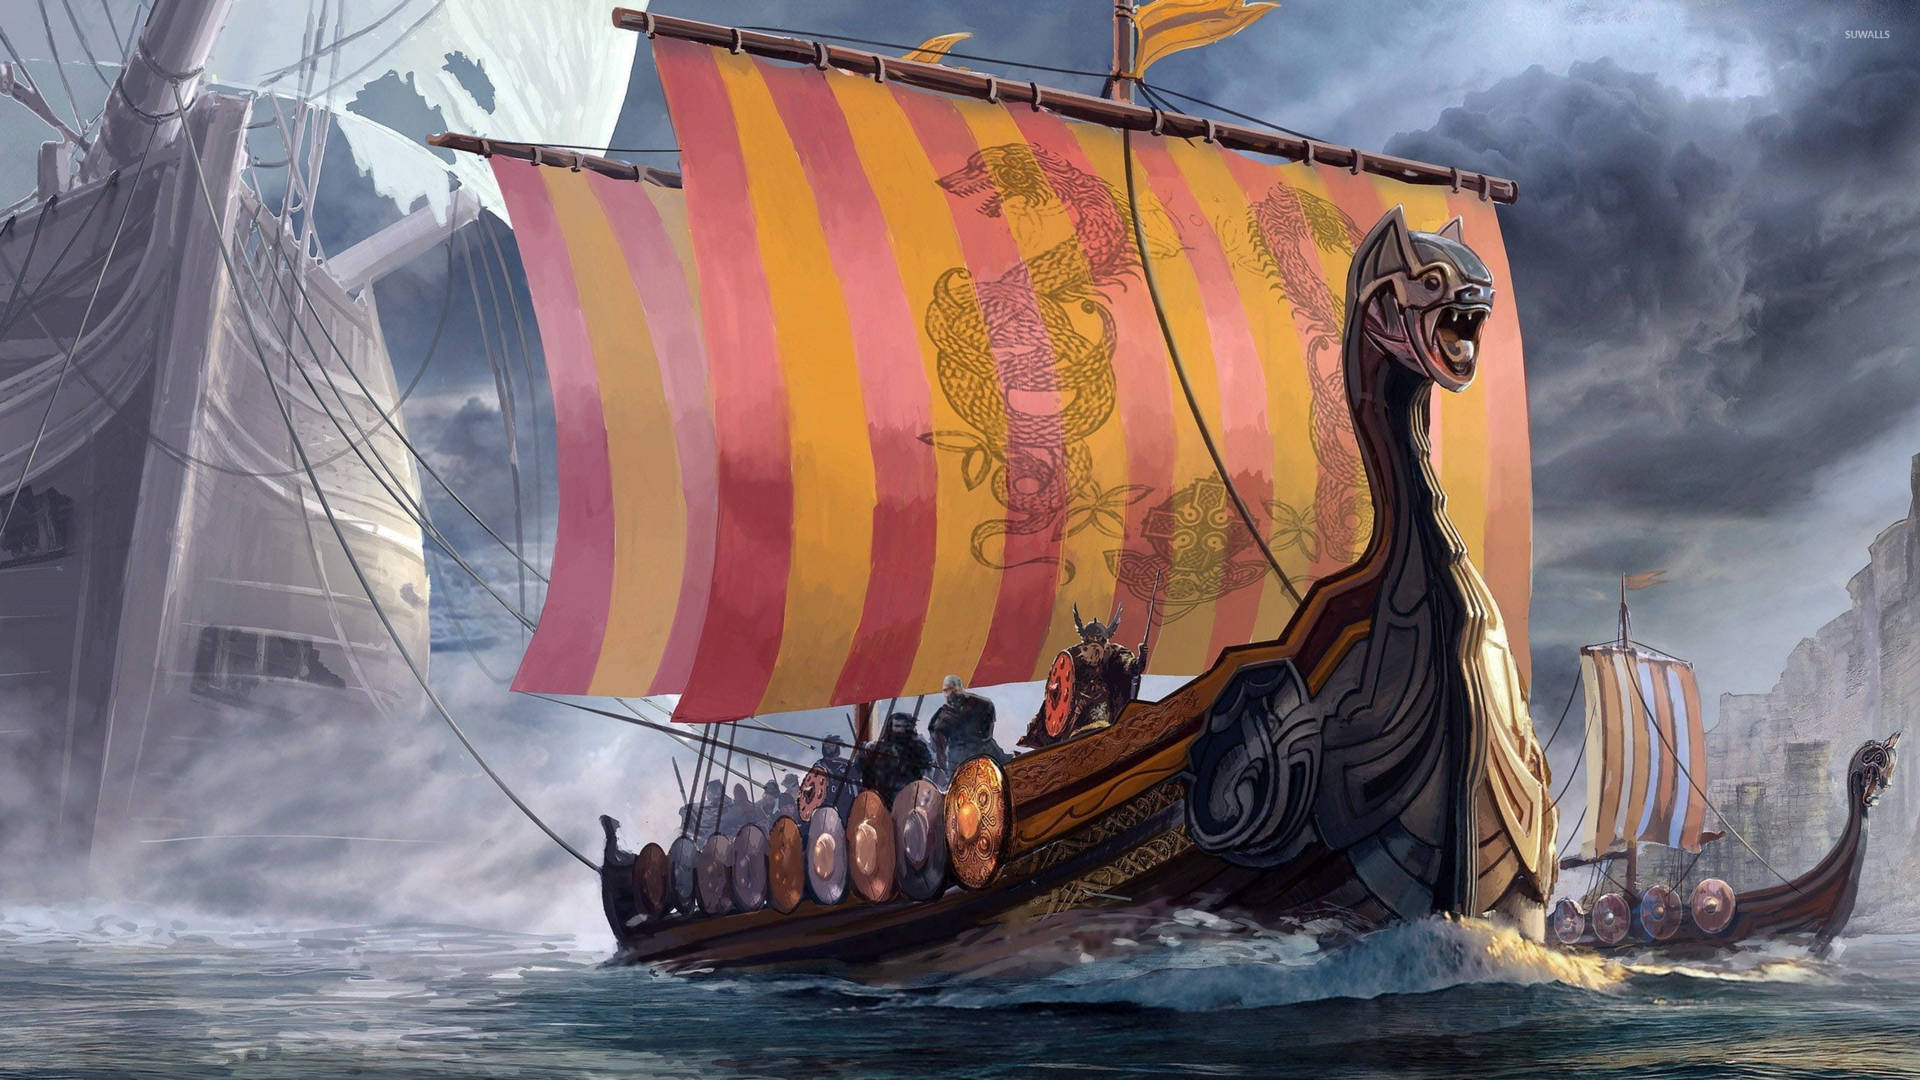 Knarr Viking Ship